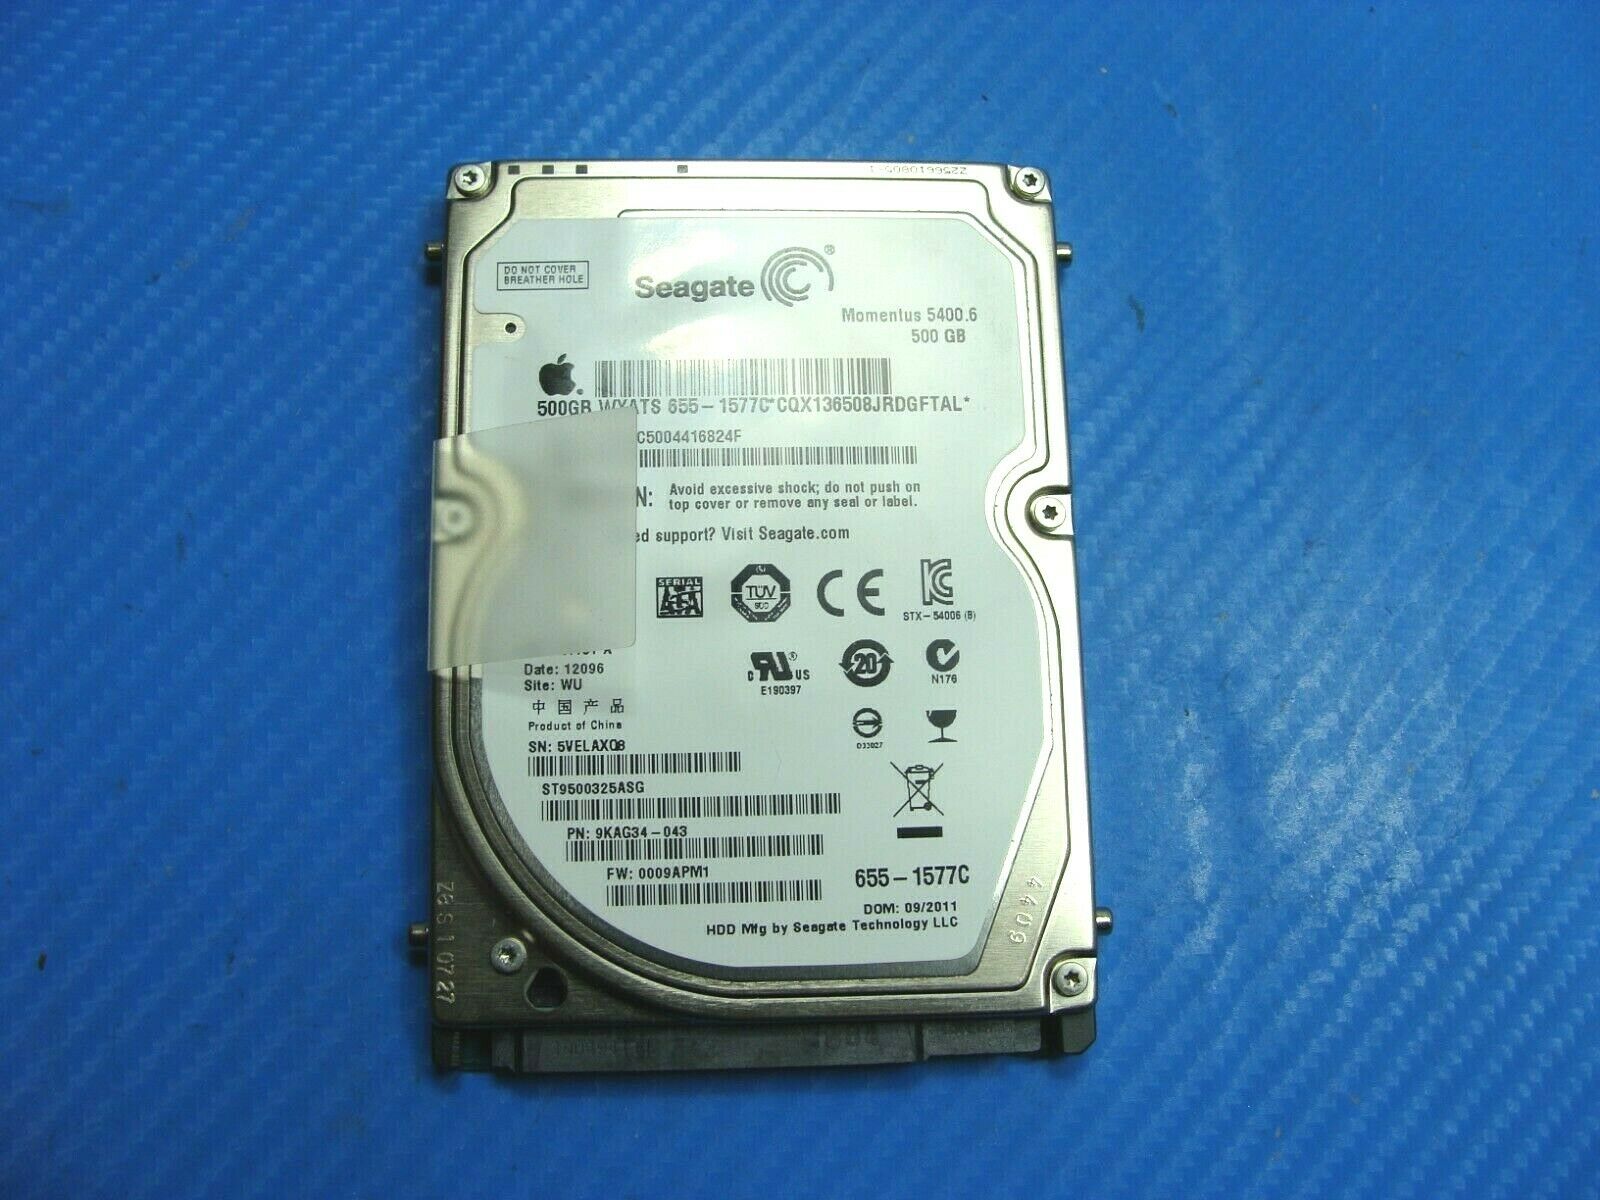 Pro A1286 2011 Seagate SATA 2.5" 500GB HDD Drive 655-1577C